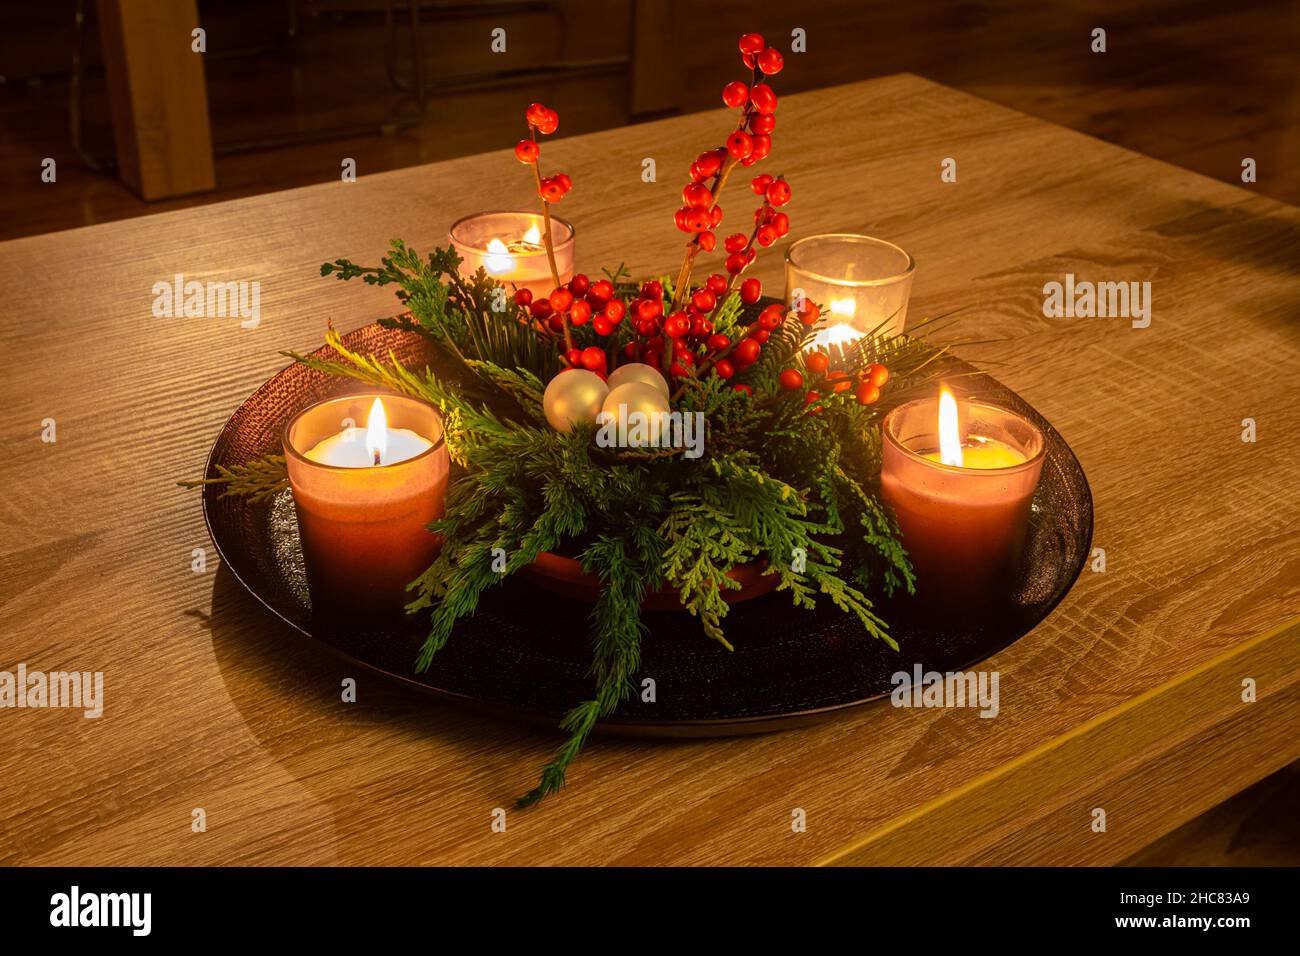 Decorazioni natalizie fatte a mano con candele, rami di conifere e bacche rosse Foto Stock